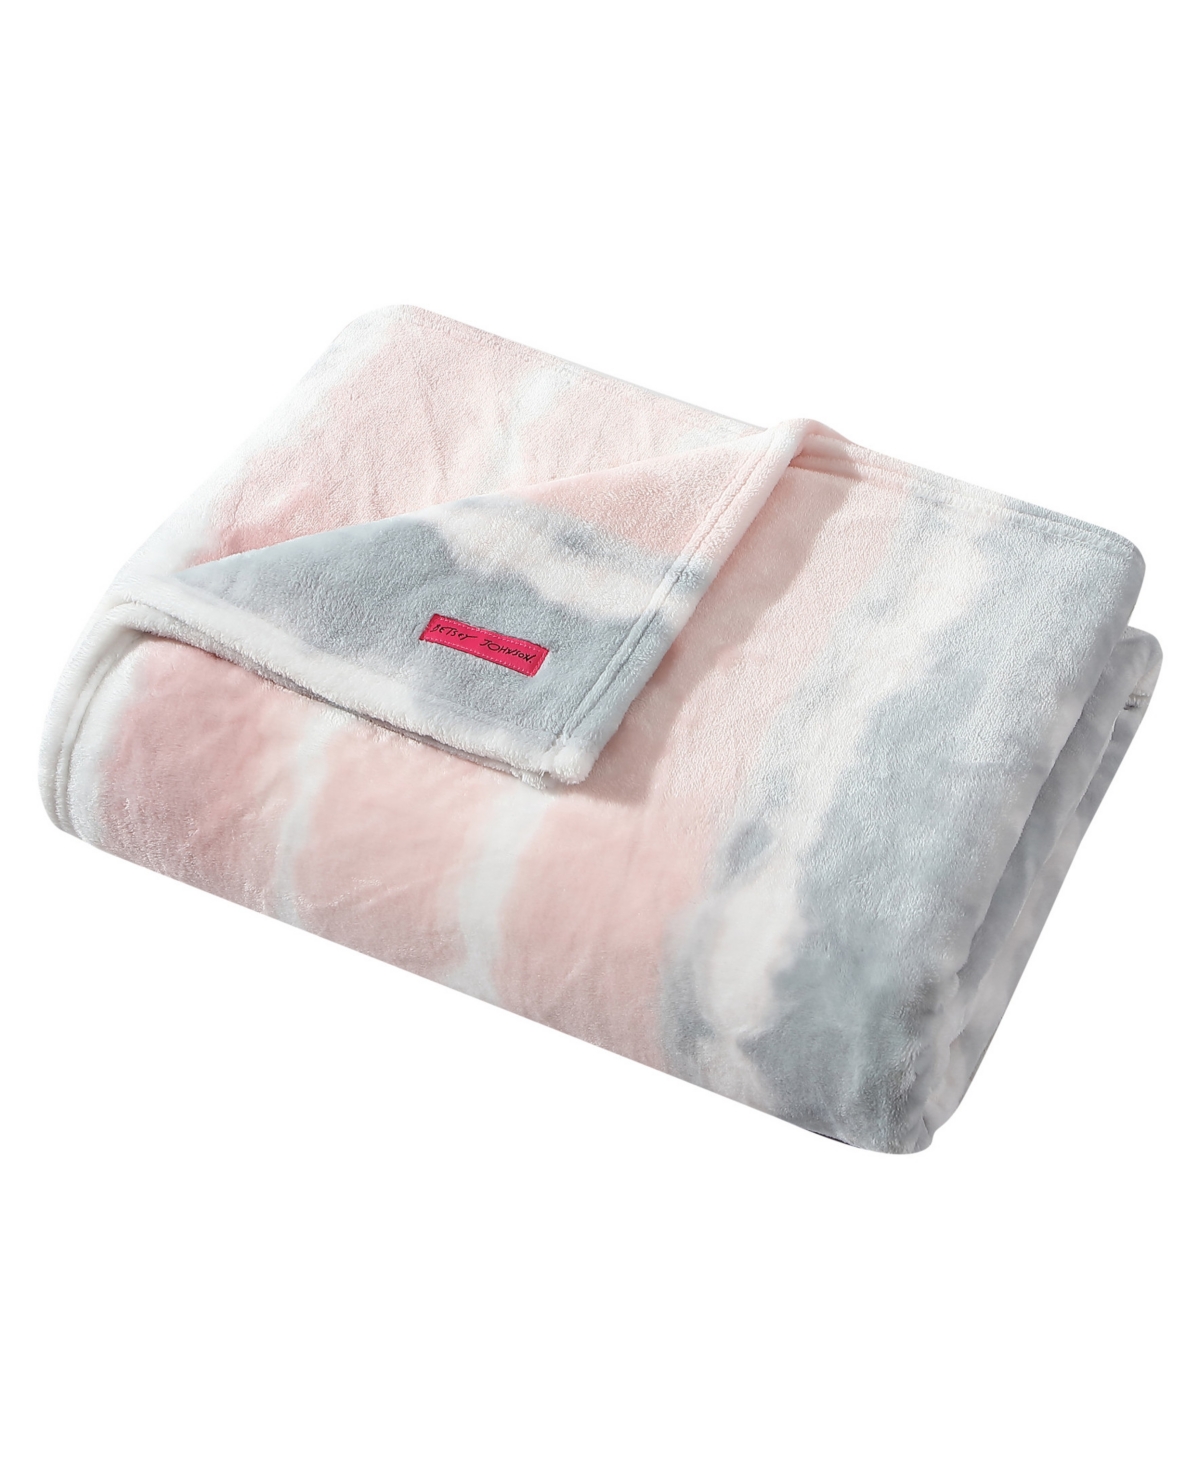 Betsey Johnson Tie Dye Cloud Ultra Soft Plush Fleece Blanket, Full/queen Bedding In Rose Water